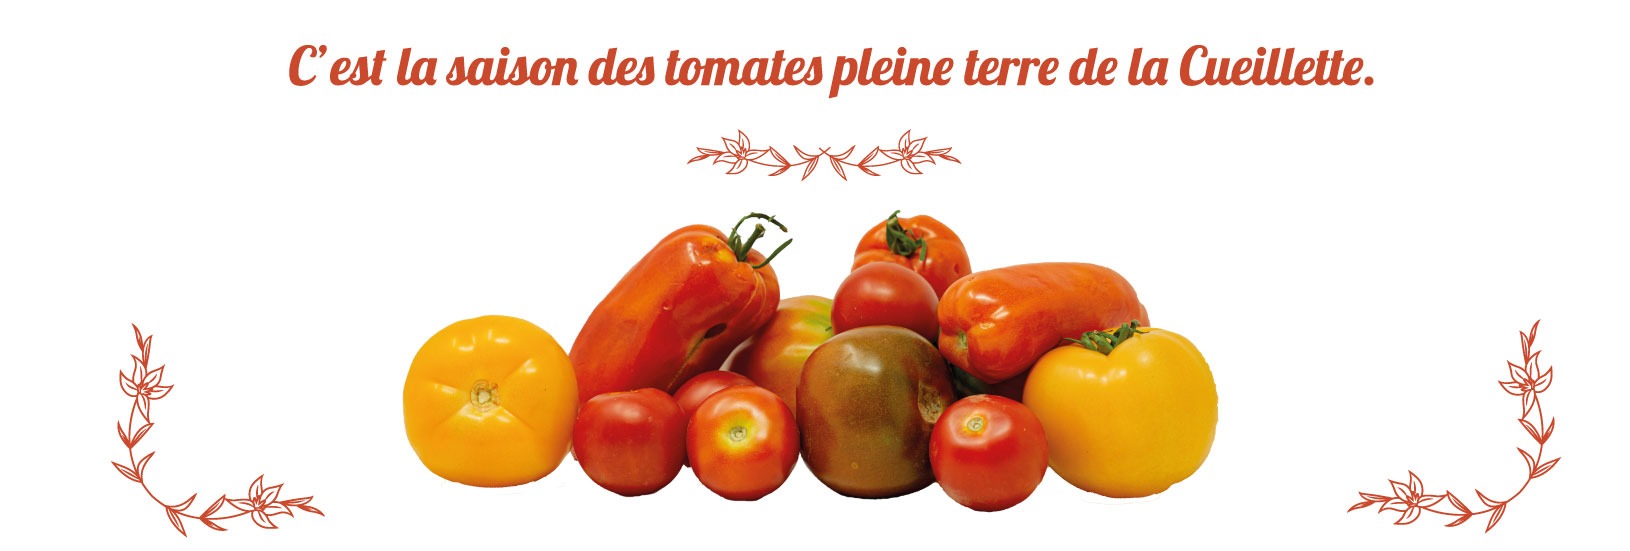 tomates cueillette